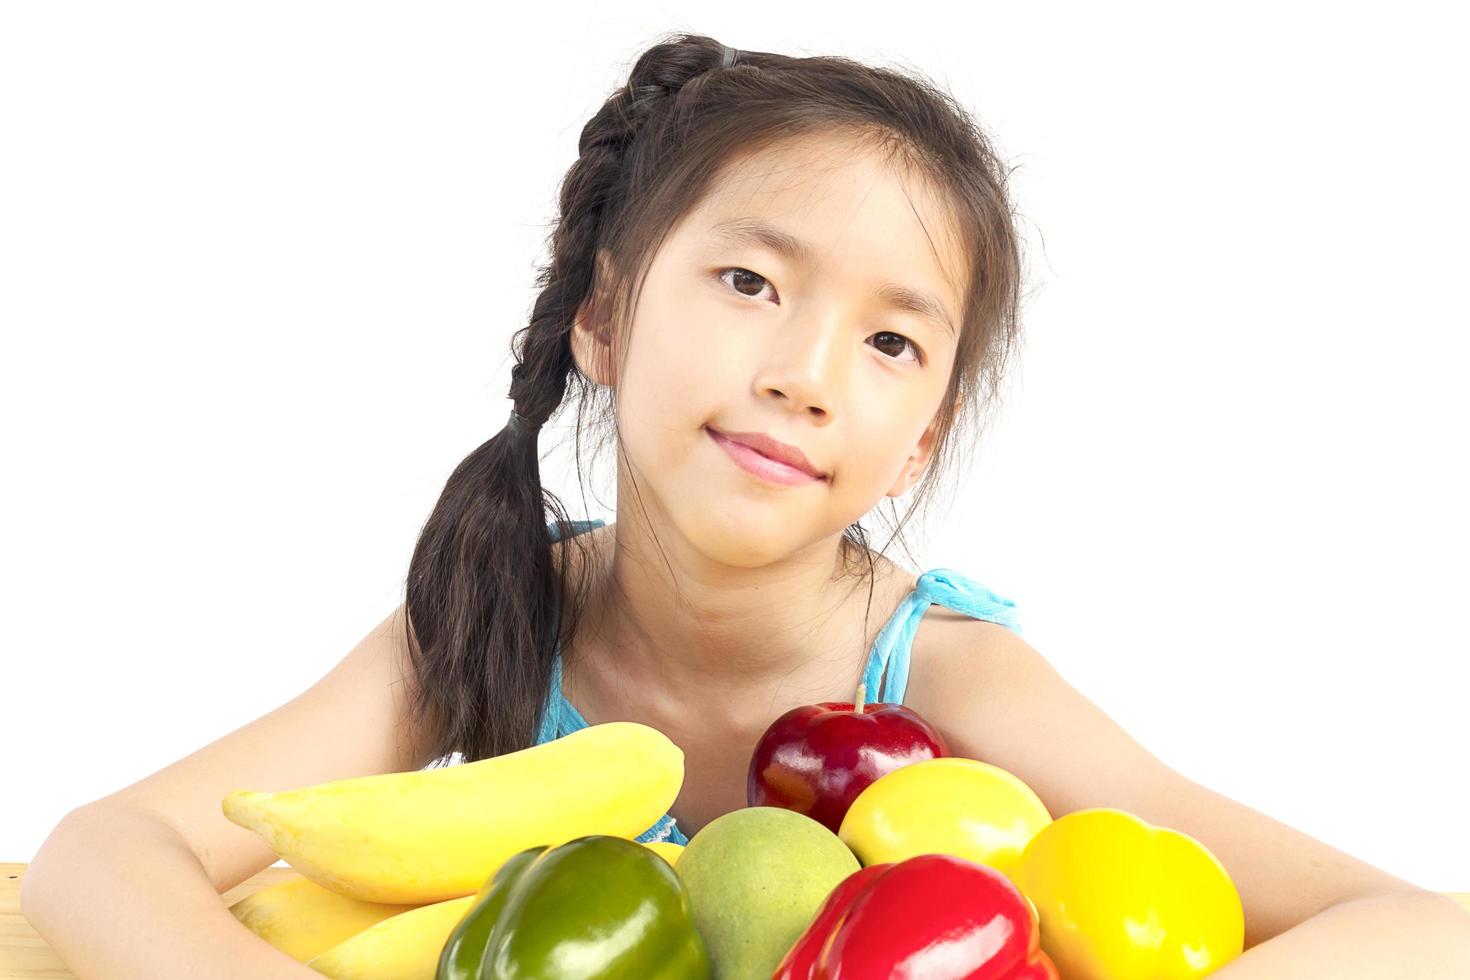 Aziatische gezonde gril die gelukkige uitdrukking met verscheidenheids kleurrijk fruit en groente toont op witte achtergrond foto